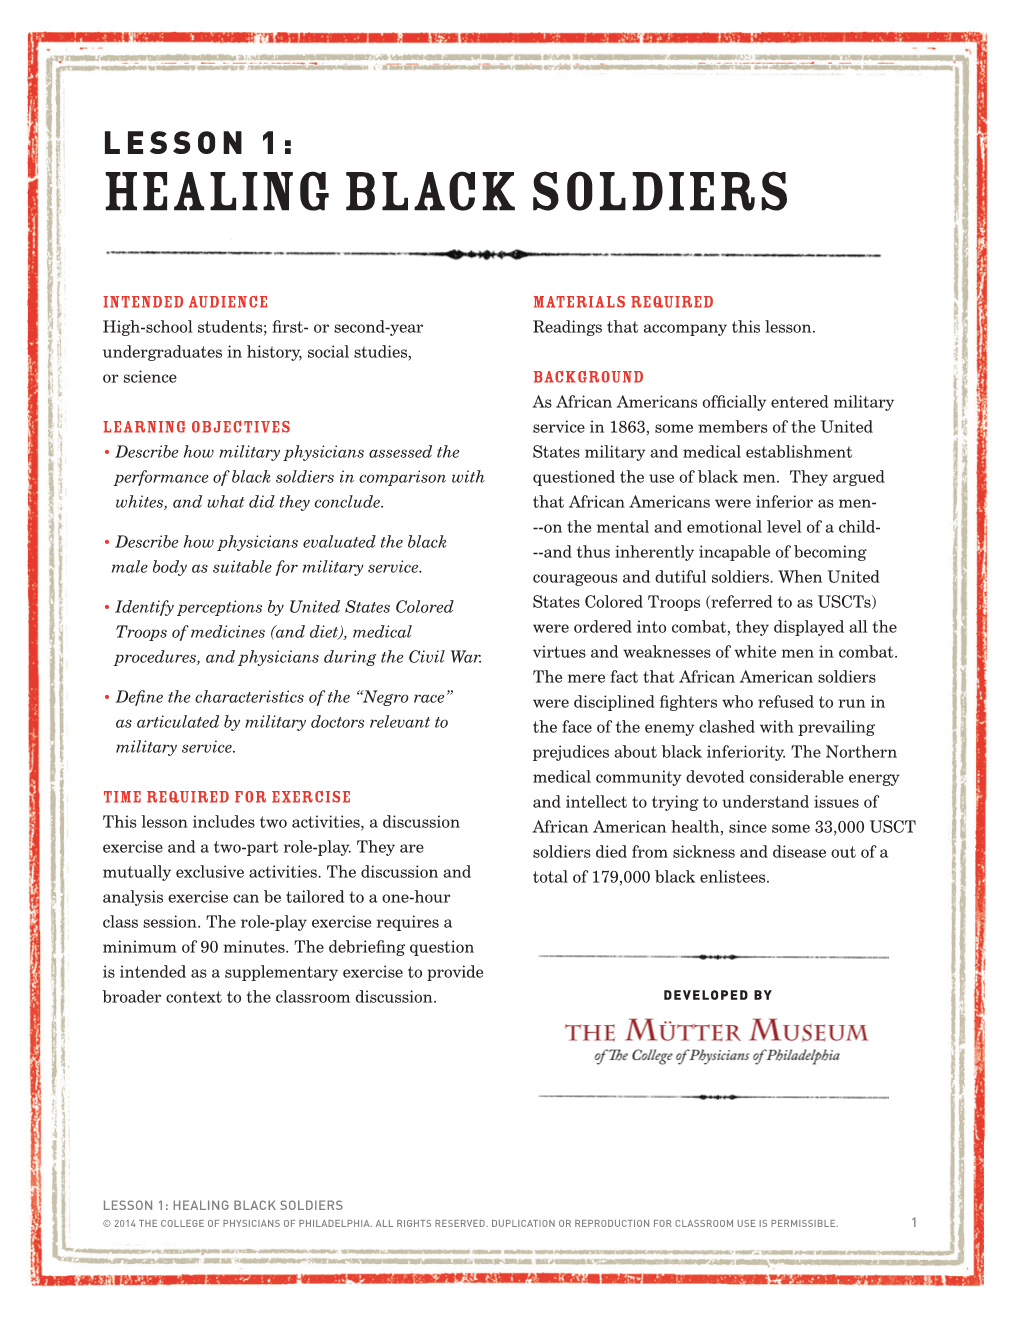 Healing Black Soldiers